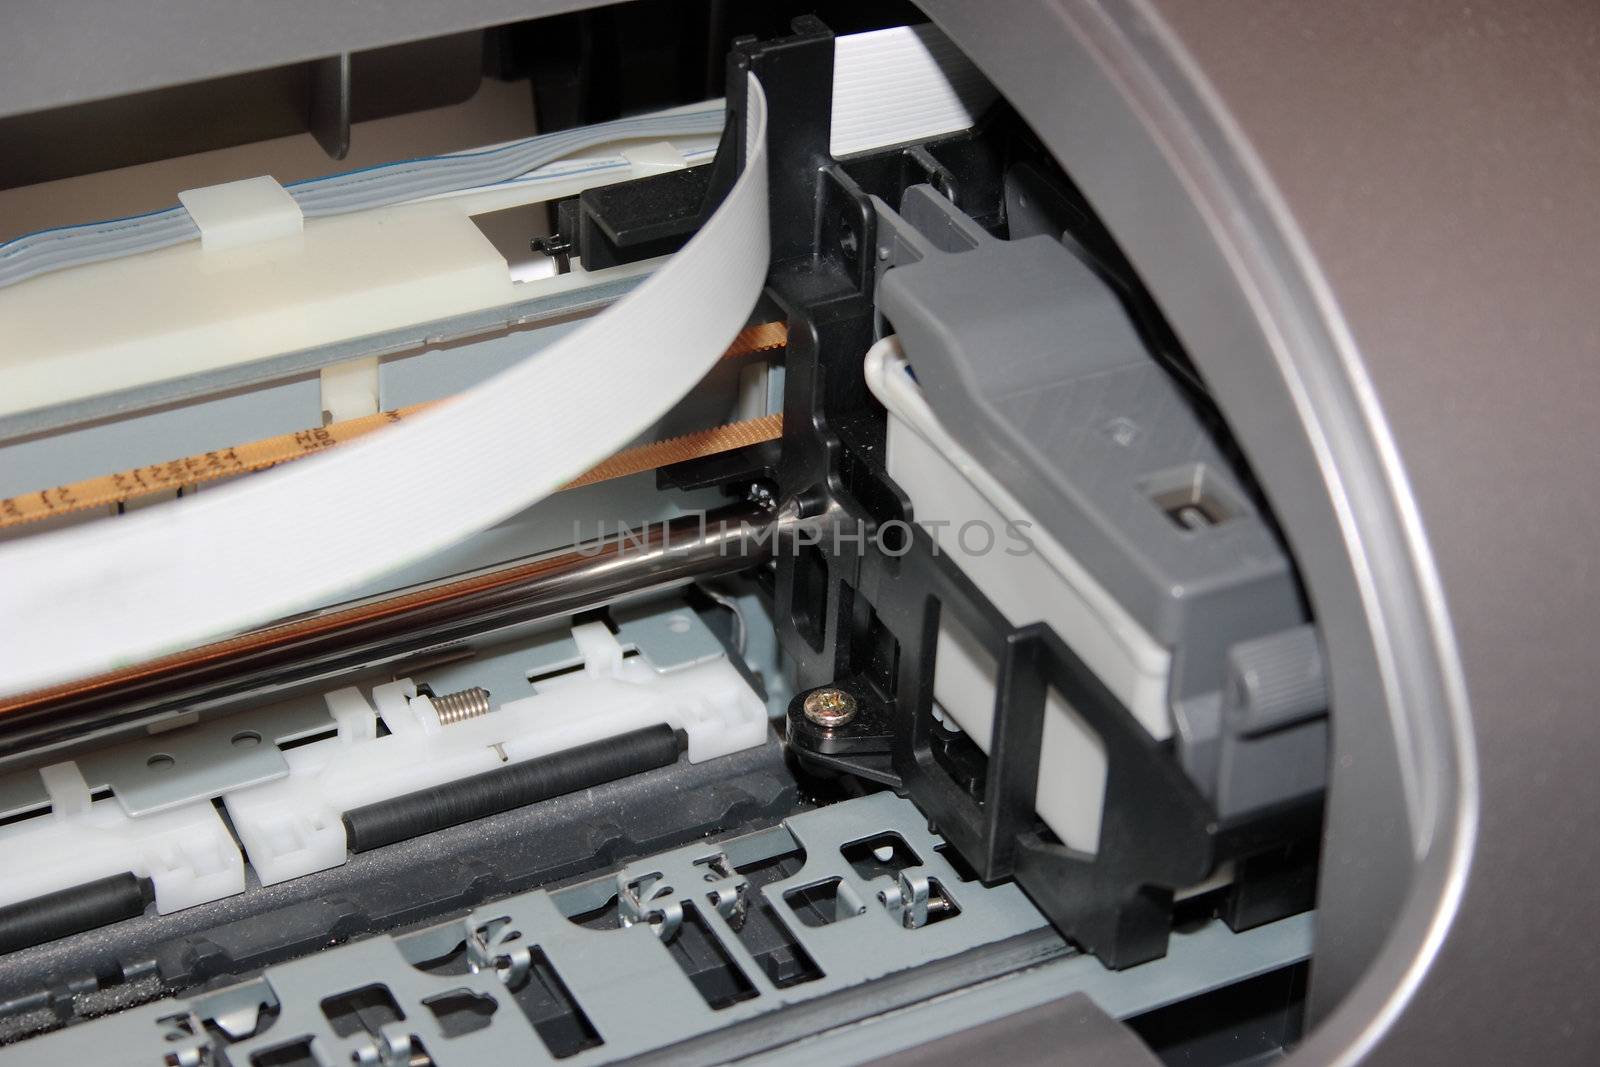 inside of a printer